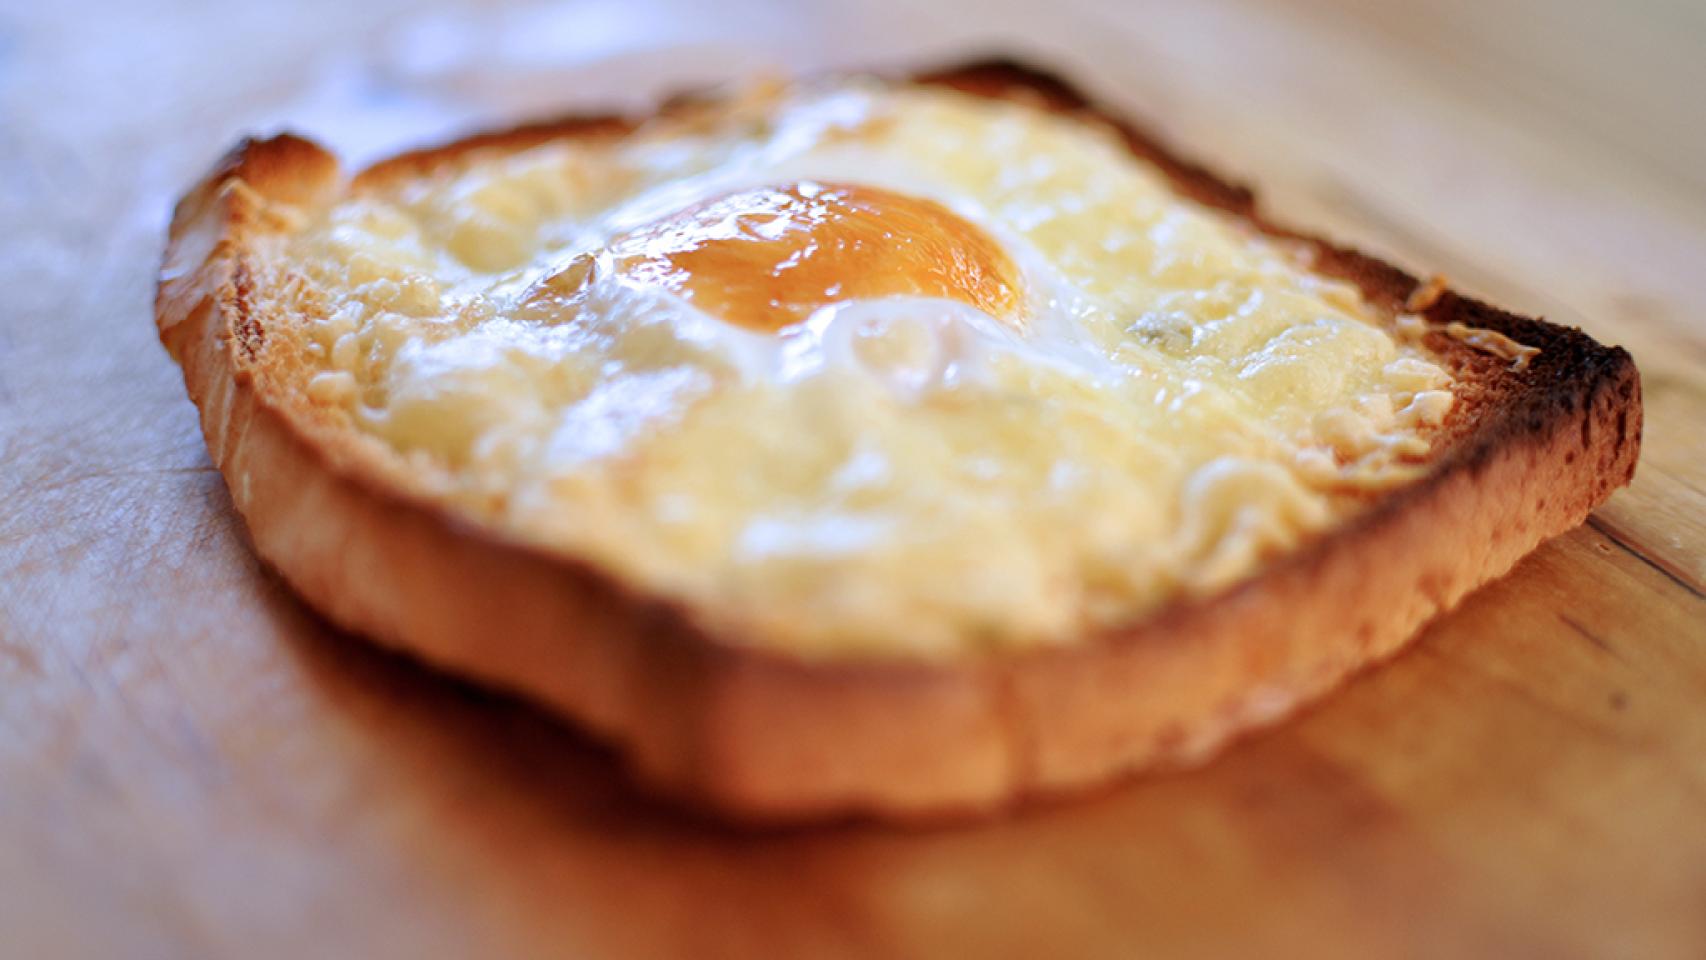 Tostada con huevo y queso, el desayuno más completo